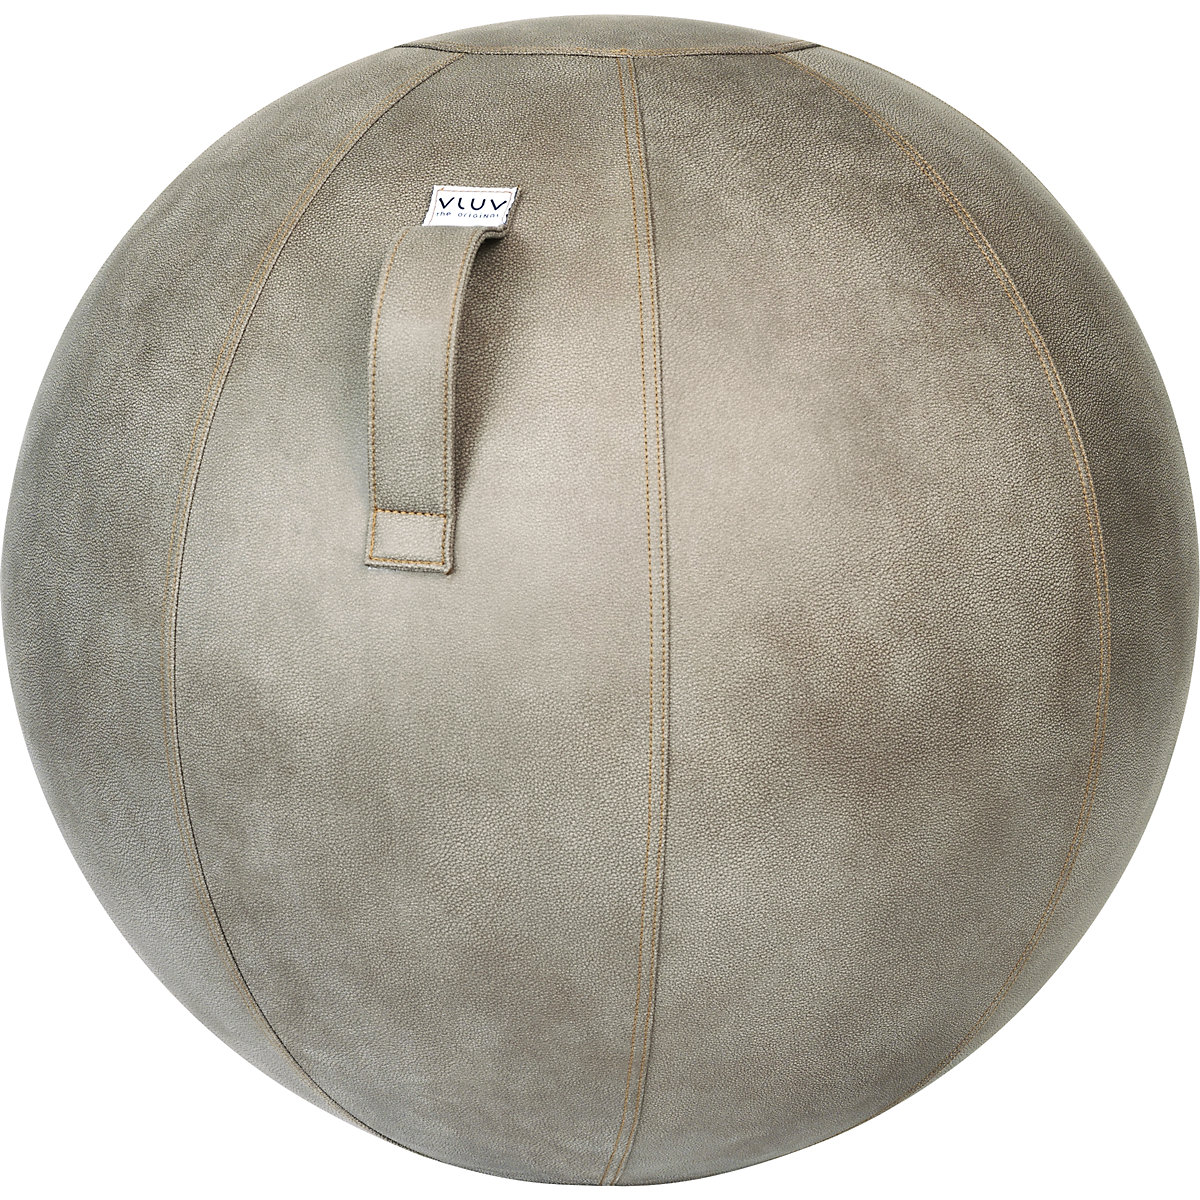 VEEL Swiss ball – VLUV, microfibre vinyl, 700 – 750 mm, mud-9